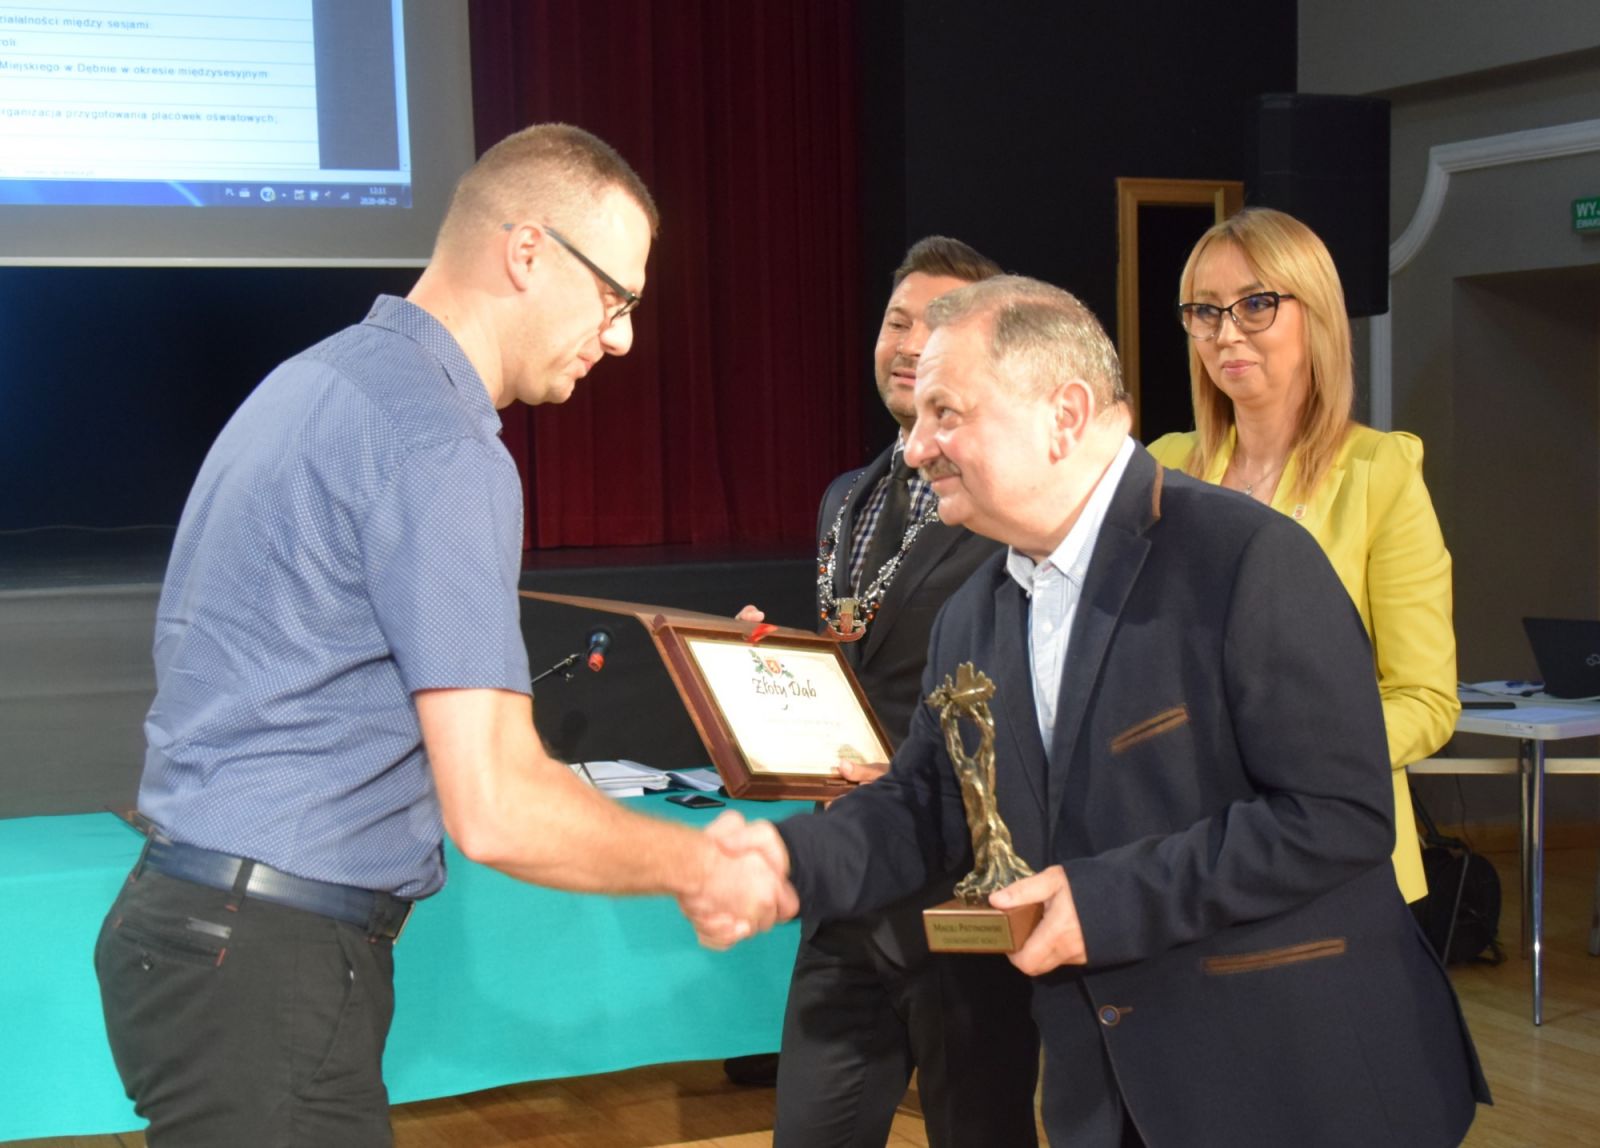 Nagrodę Maciejowi Patynowskiemu wręczył ubiegłoroczny laureat Anatol Wierzchowski